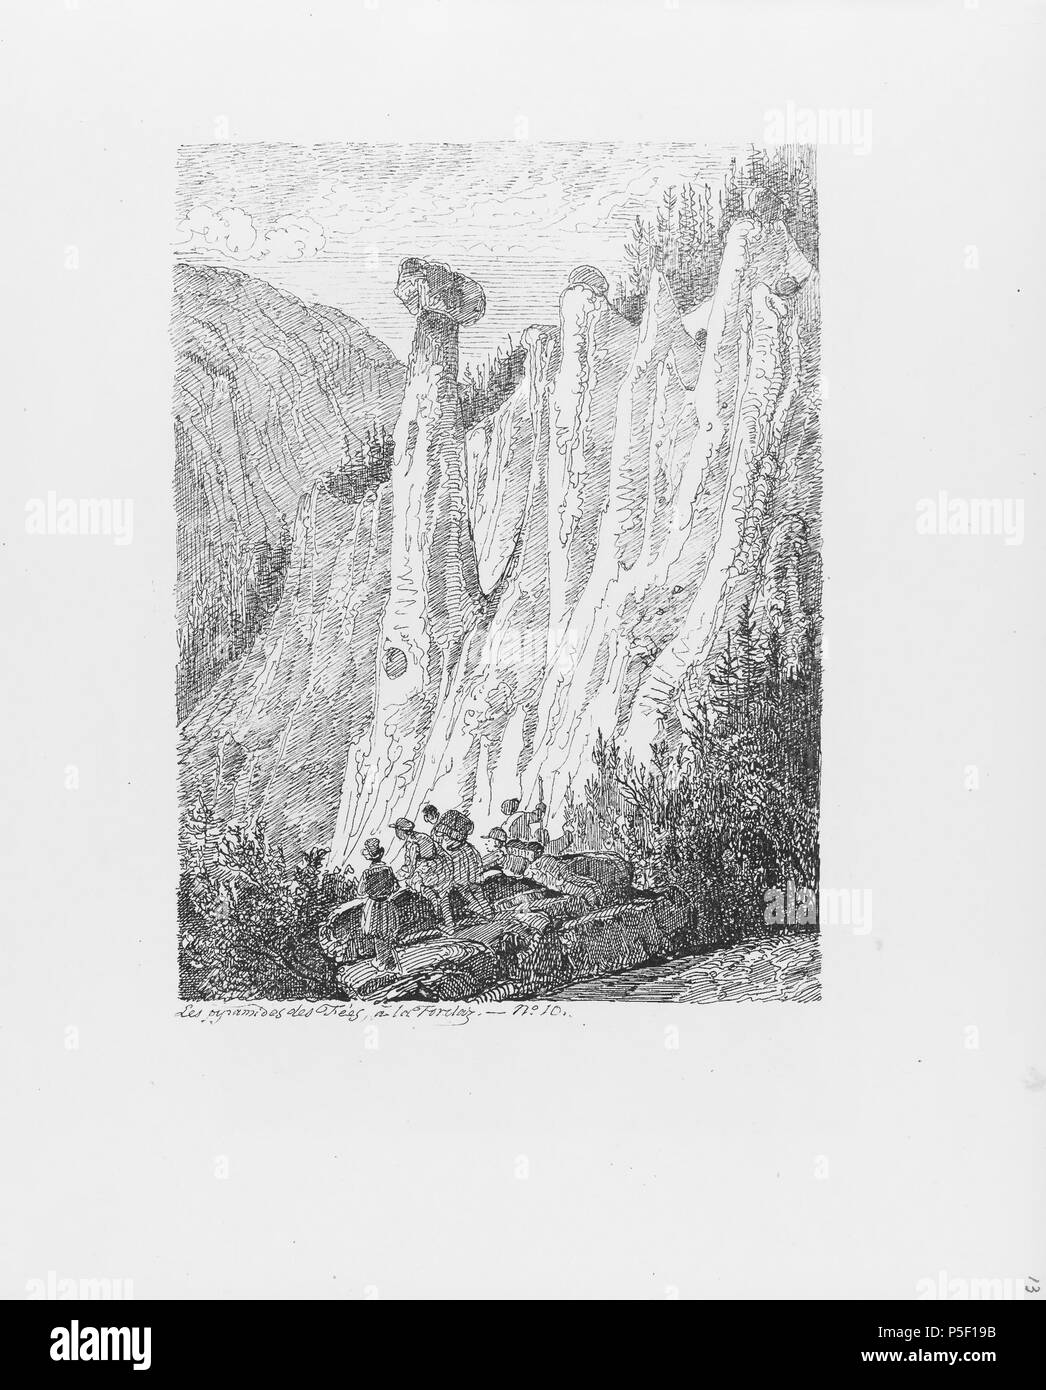 322 CH-NB-Voyage autour du Mont-Blanc dans les vallées d'Hérens de Zermatt et au Grimsel 1843-nbdig-19161-012 Stock Photo